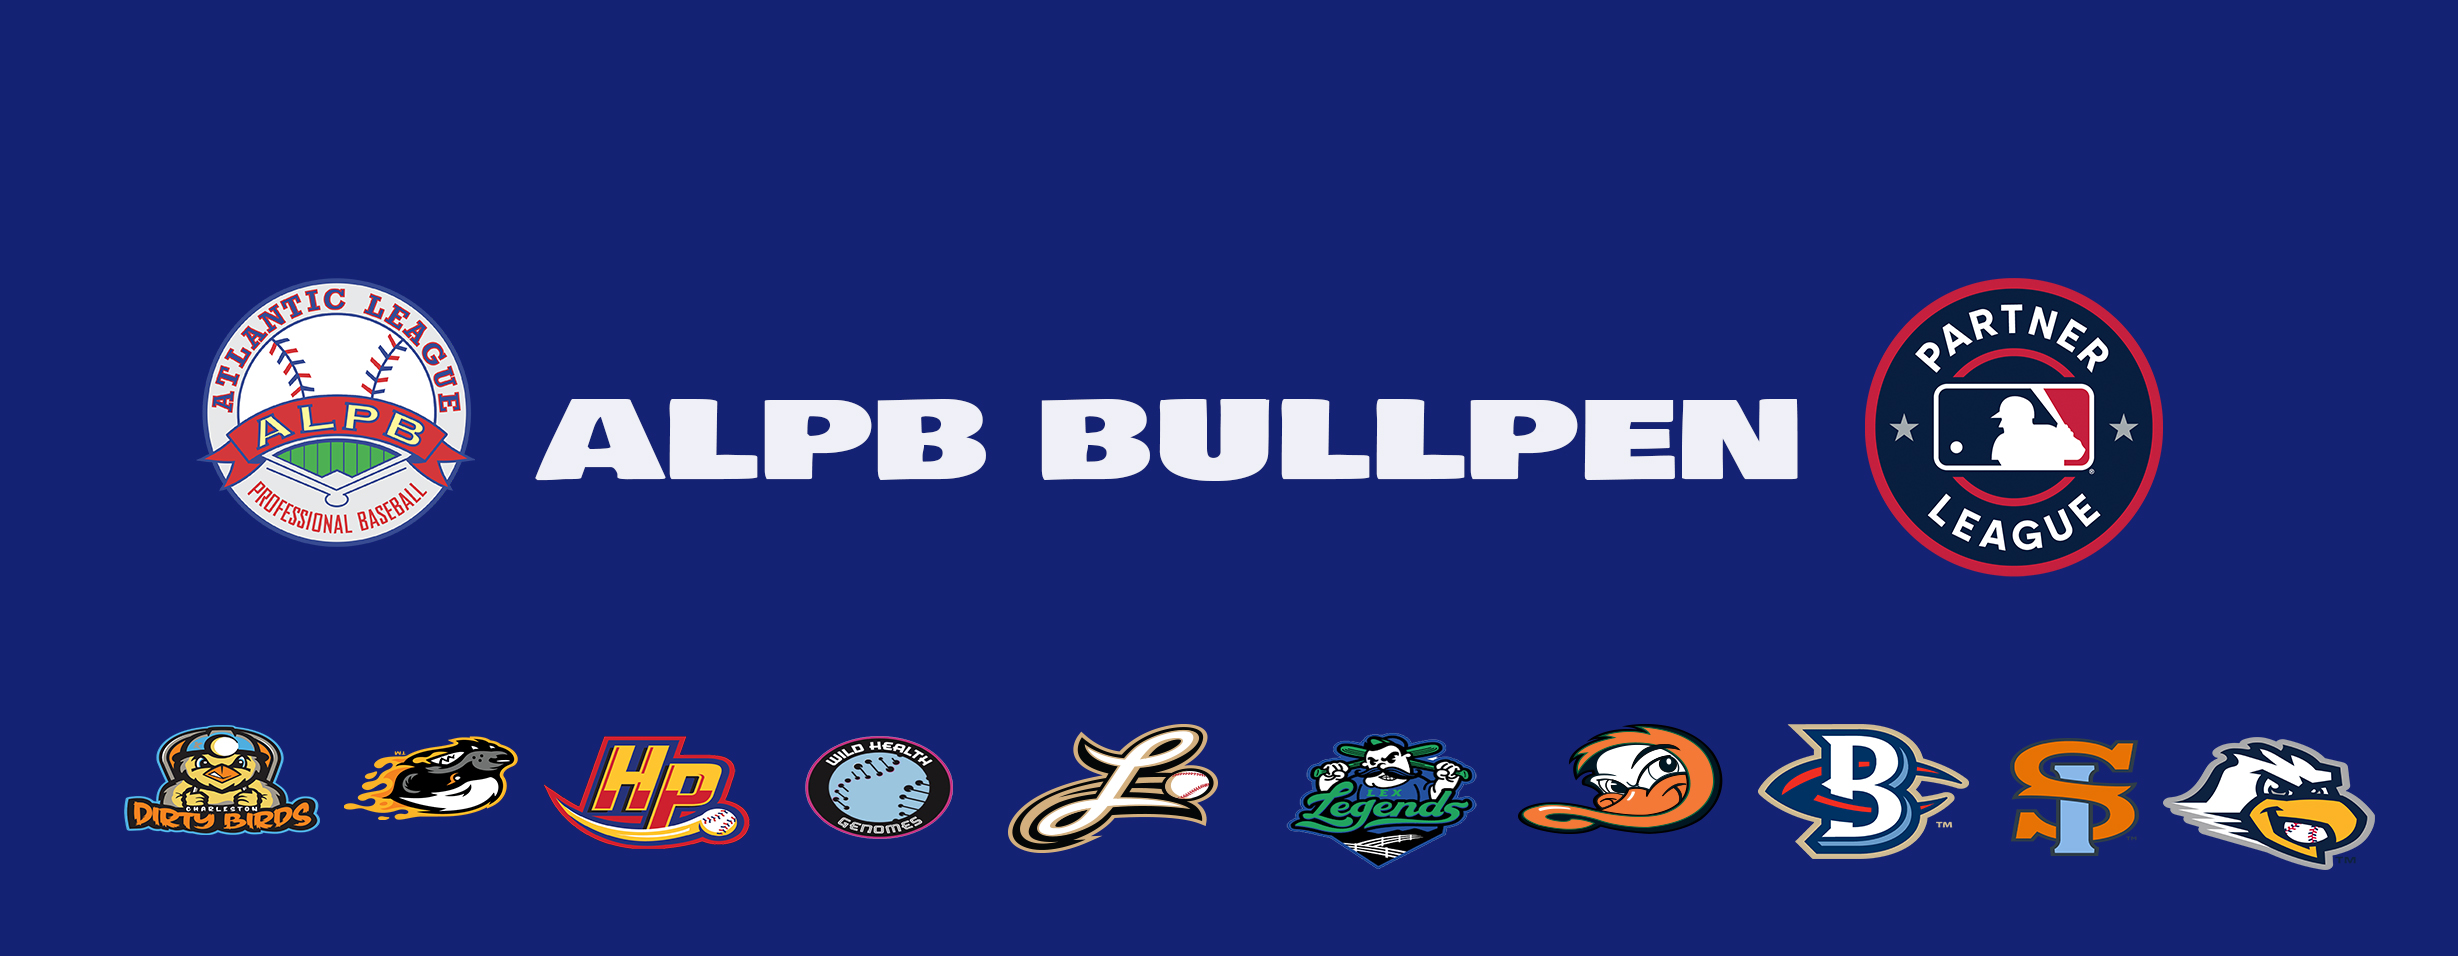 Atlantic League Bullpen, May 17, 2022